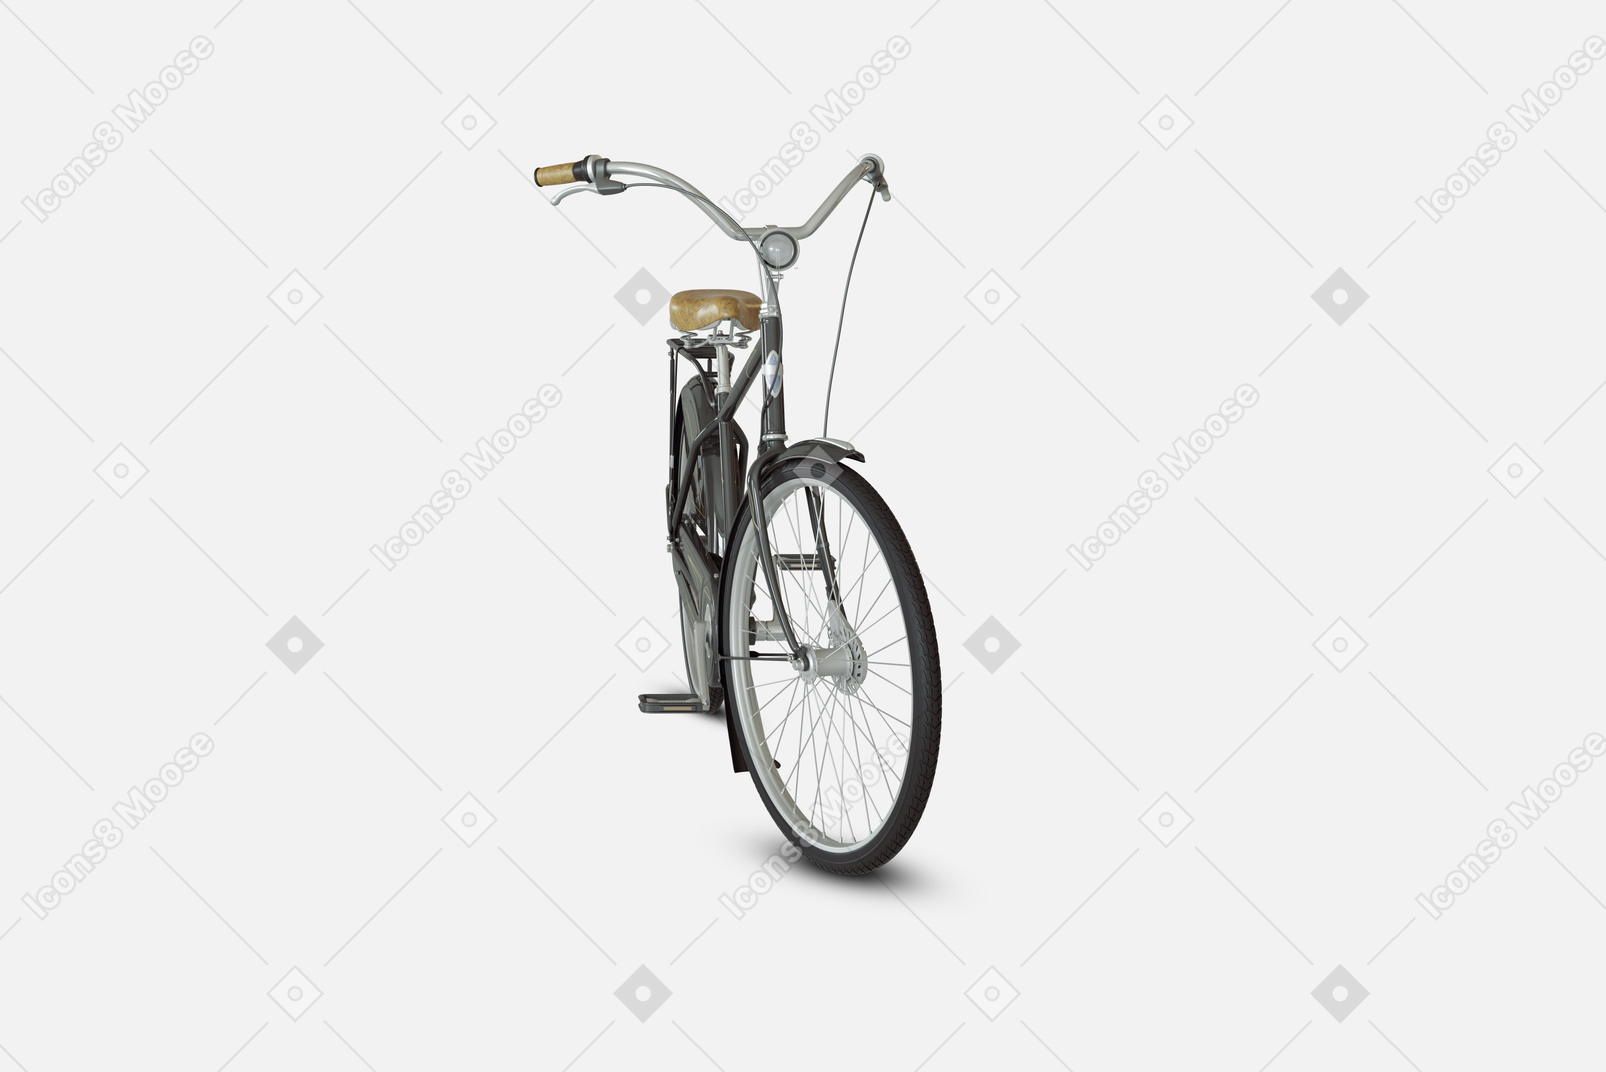 Bicicleta urbana negra con frenos delanteros y traseros y un cuadro especial